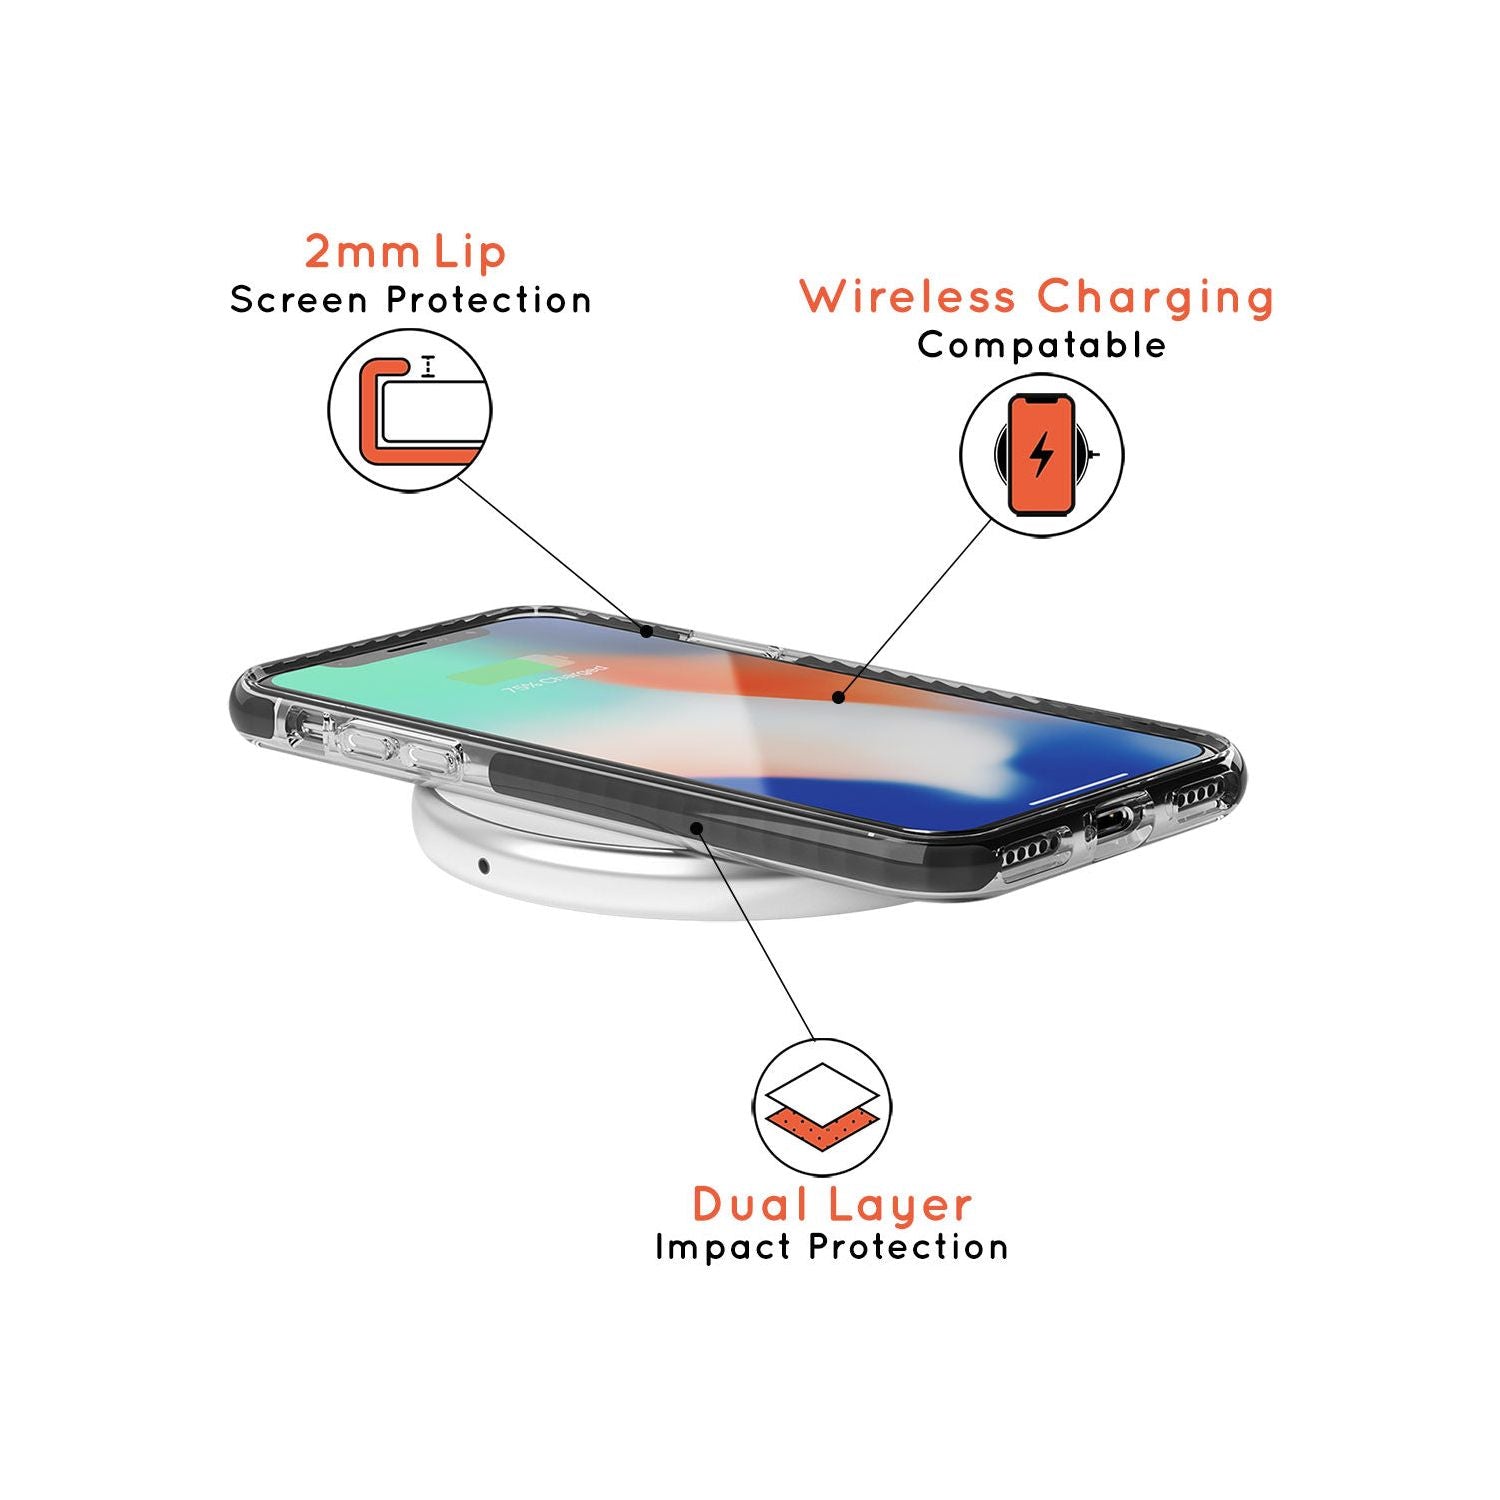 Virgo Emblem - Transparent Design Black Impact Phone Case for iPhone SE 8 7 Plus